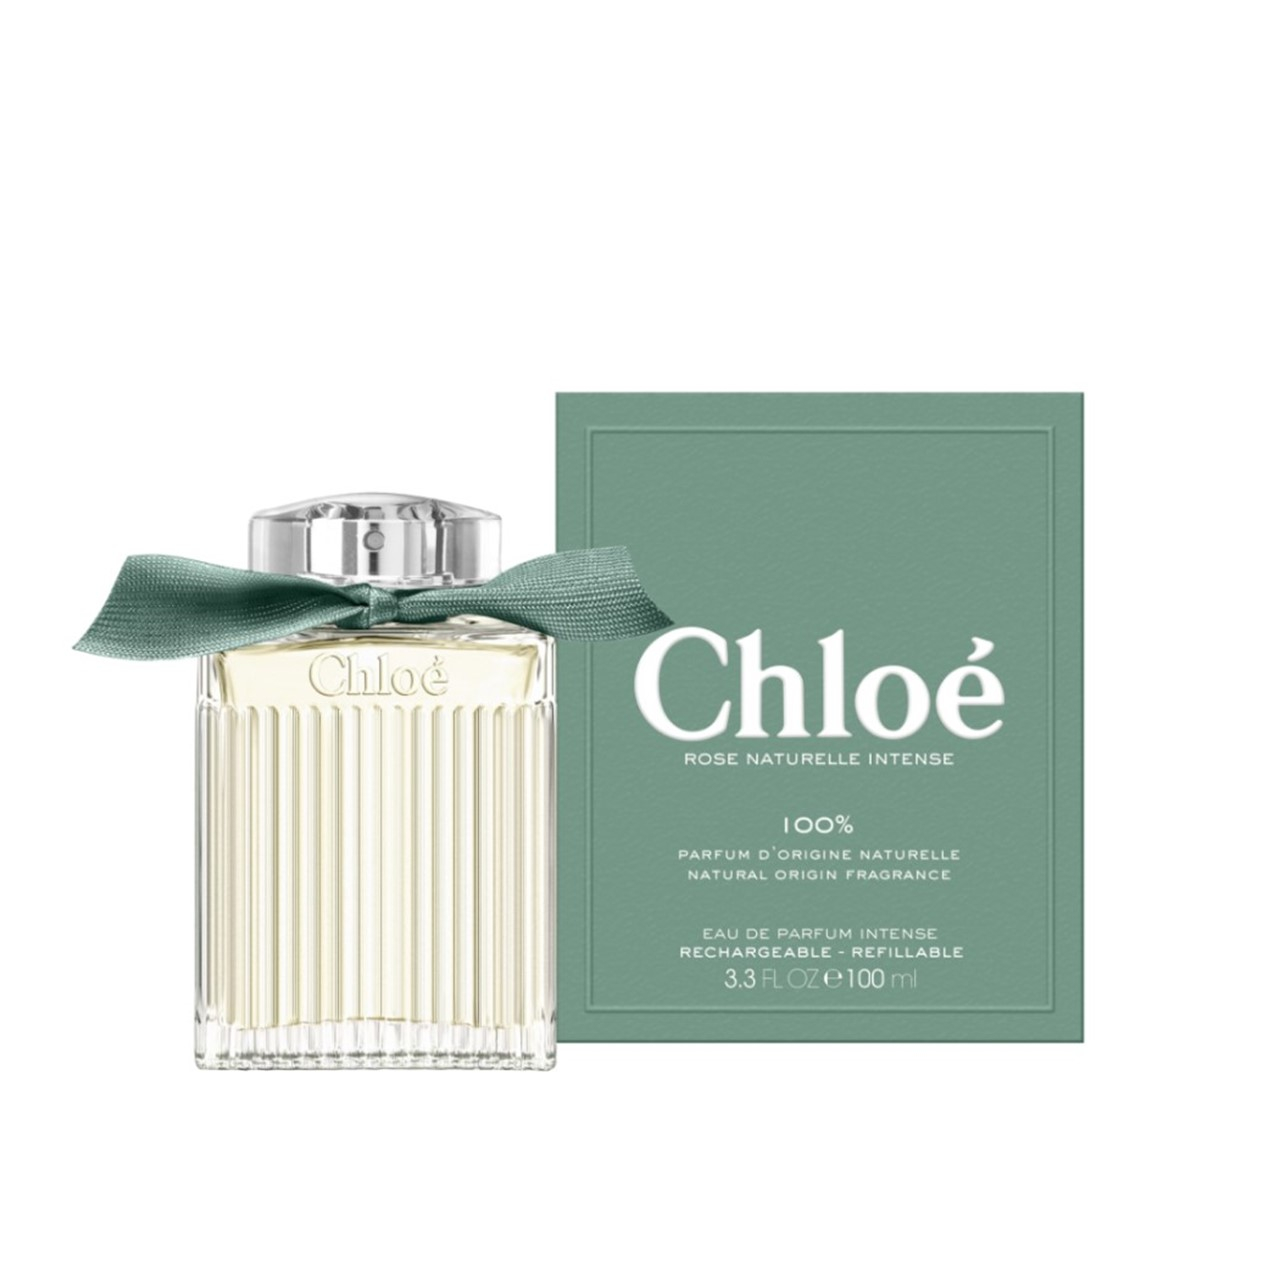 Chloé Rose Naturelle Intense Eau de Parfum 100ml